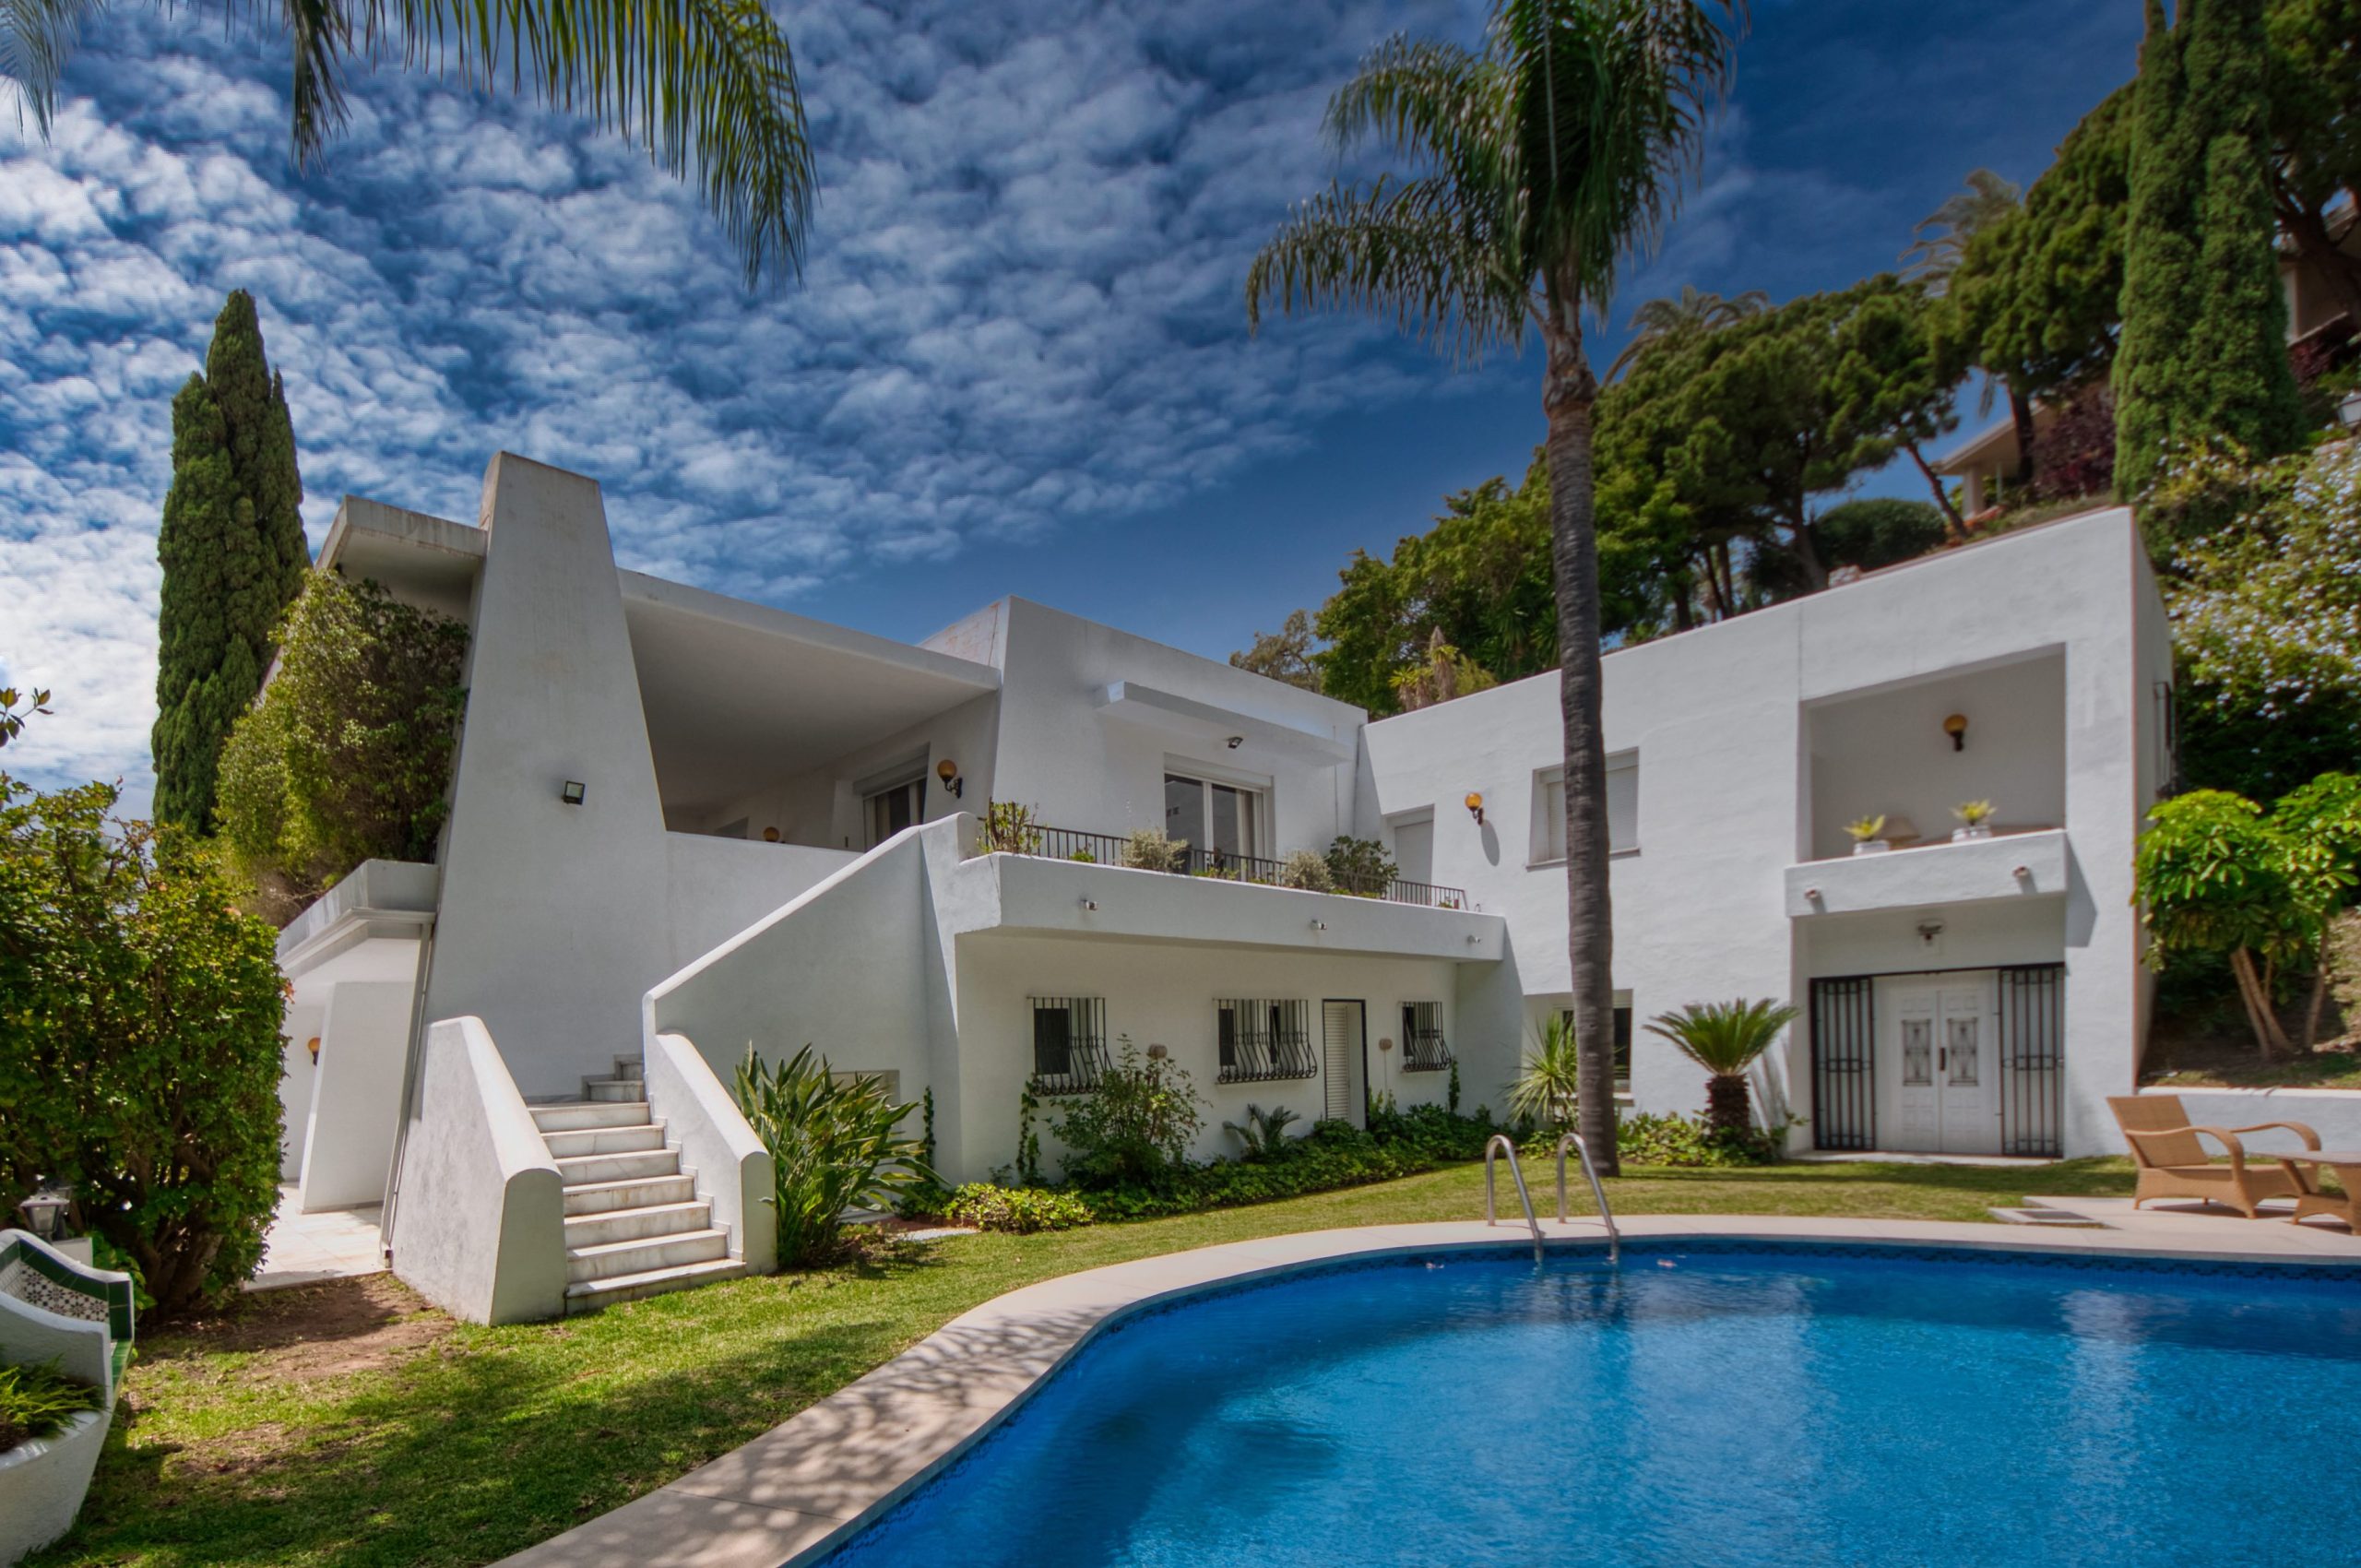 Rio Real, Marbella, investment opportunity villa